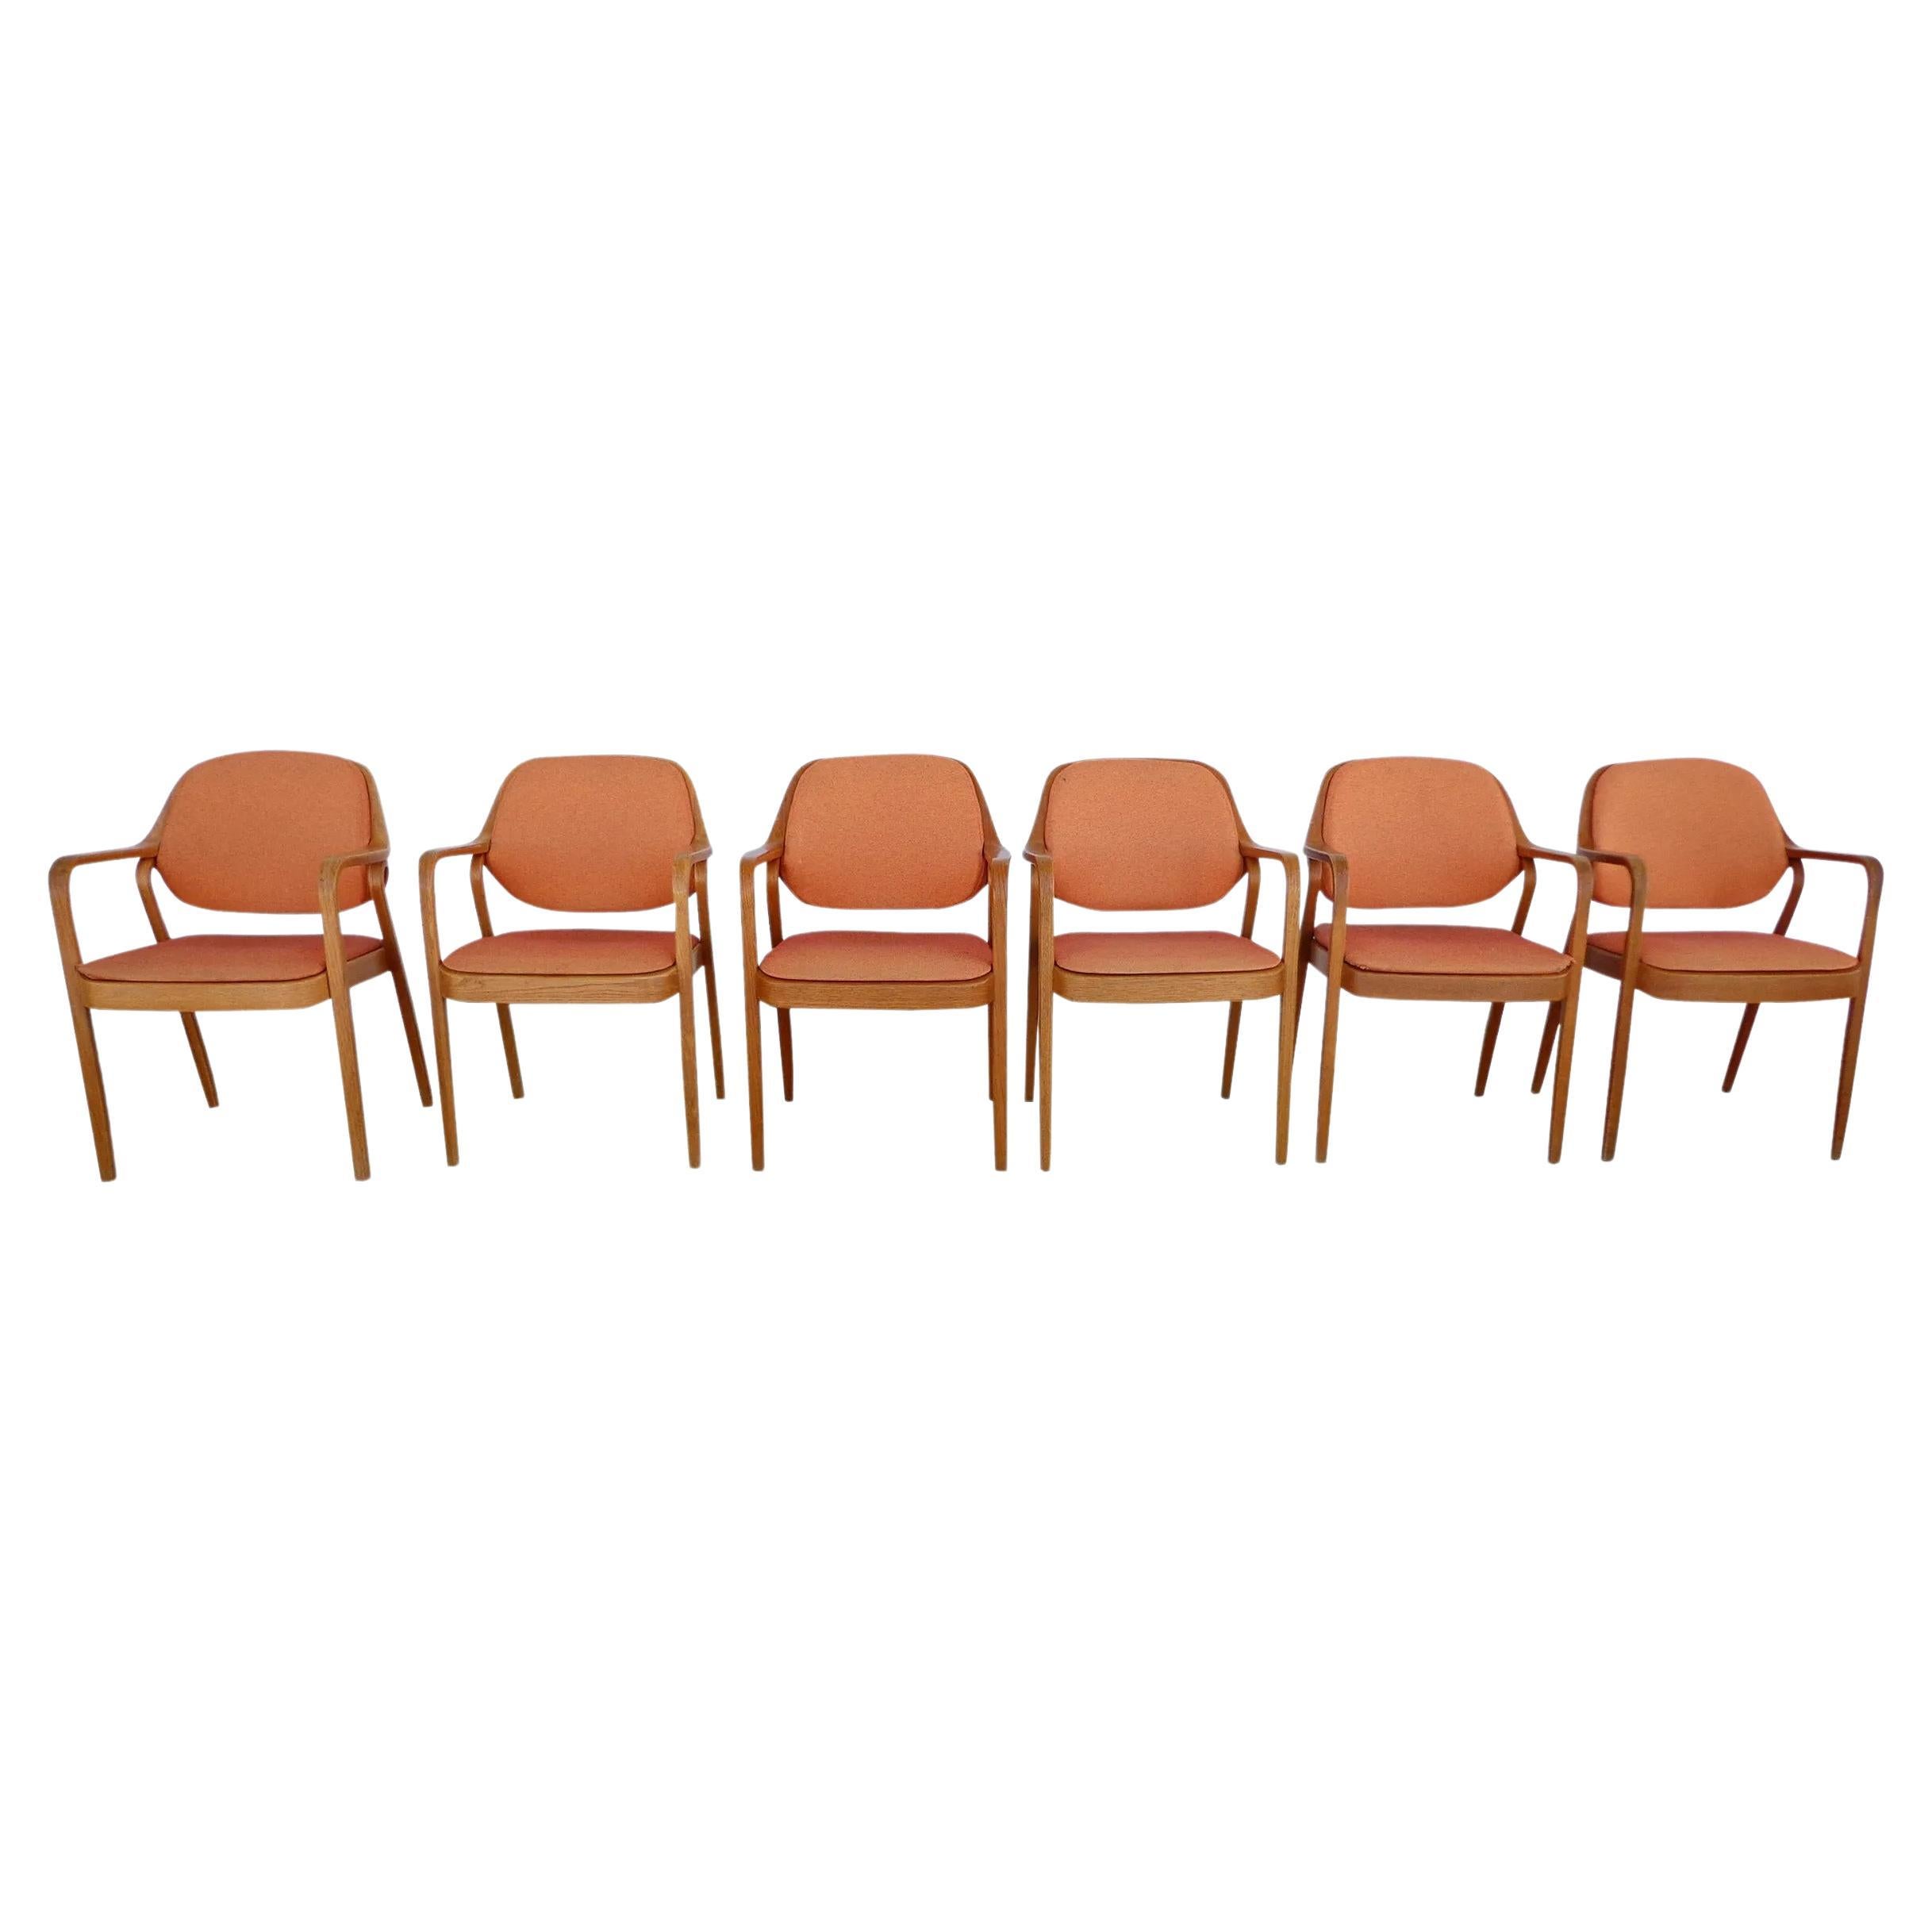 1 Vintage Knoll Don Petitt Modell #1105 Eiche Sessel

Bugholzsessel von Don Petitt für Knoll. Die Beine und Armlehnen sowie der Rahmen der Rückenlehne bestehen aus geschnitzter Eiche. Die Stühle sind mit orangefarbenen Originalpolstern von Knoll